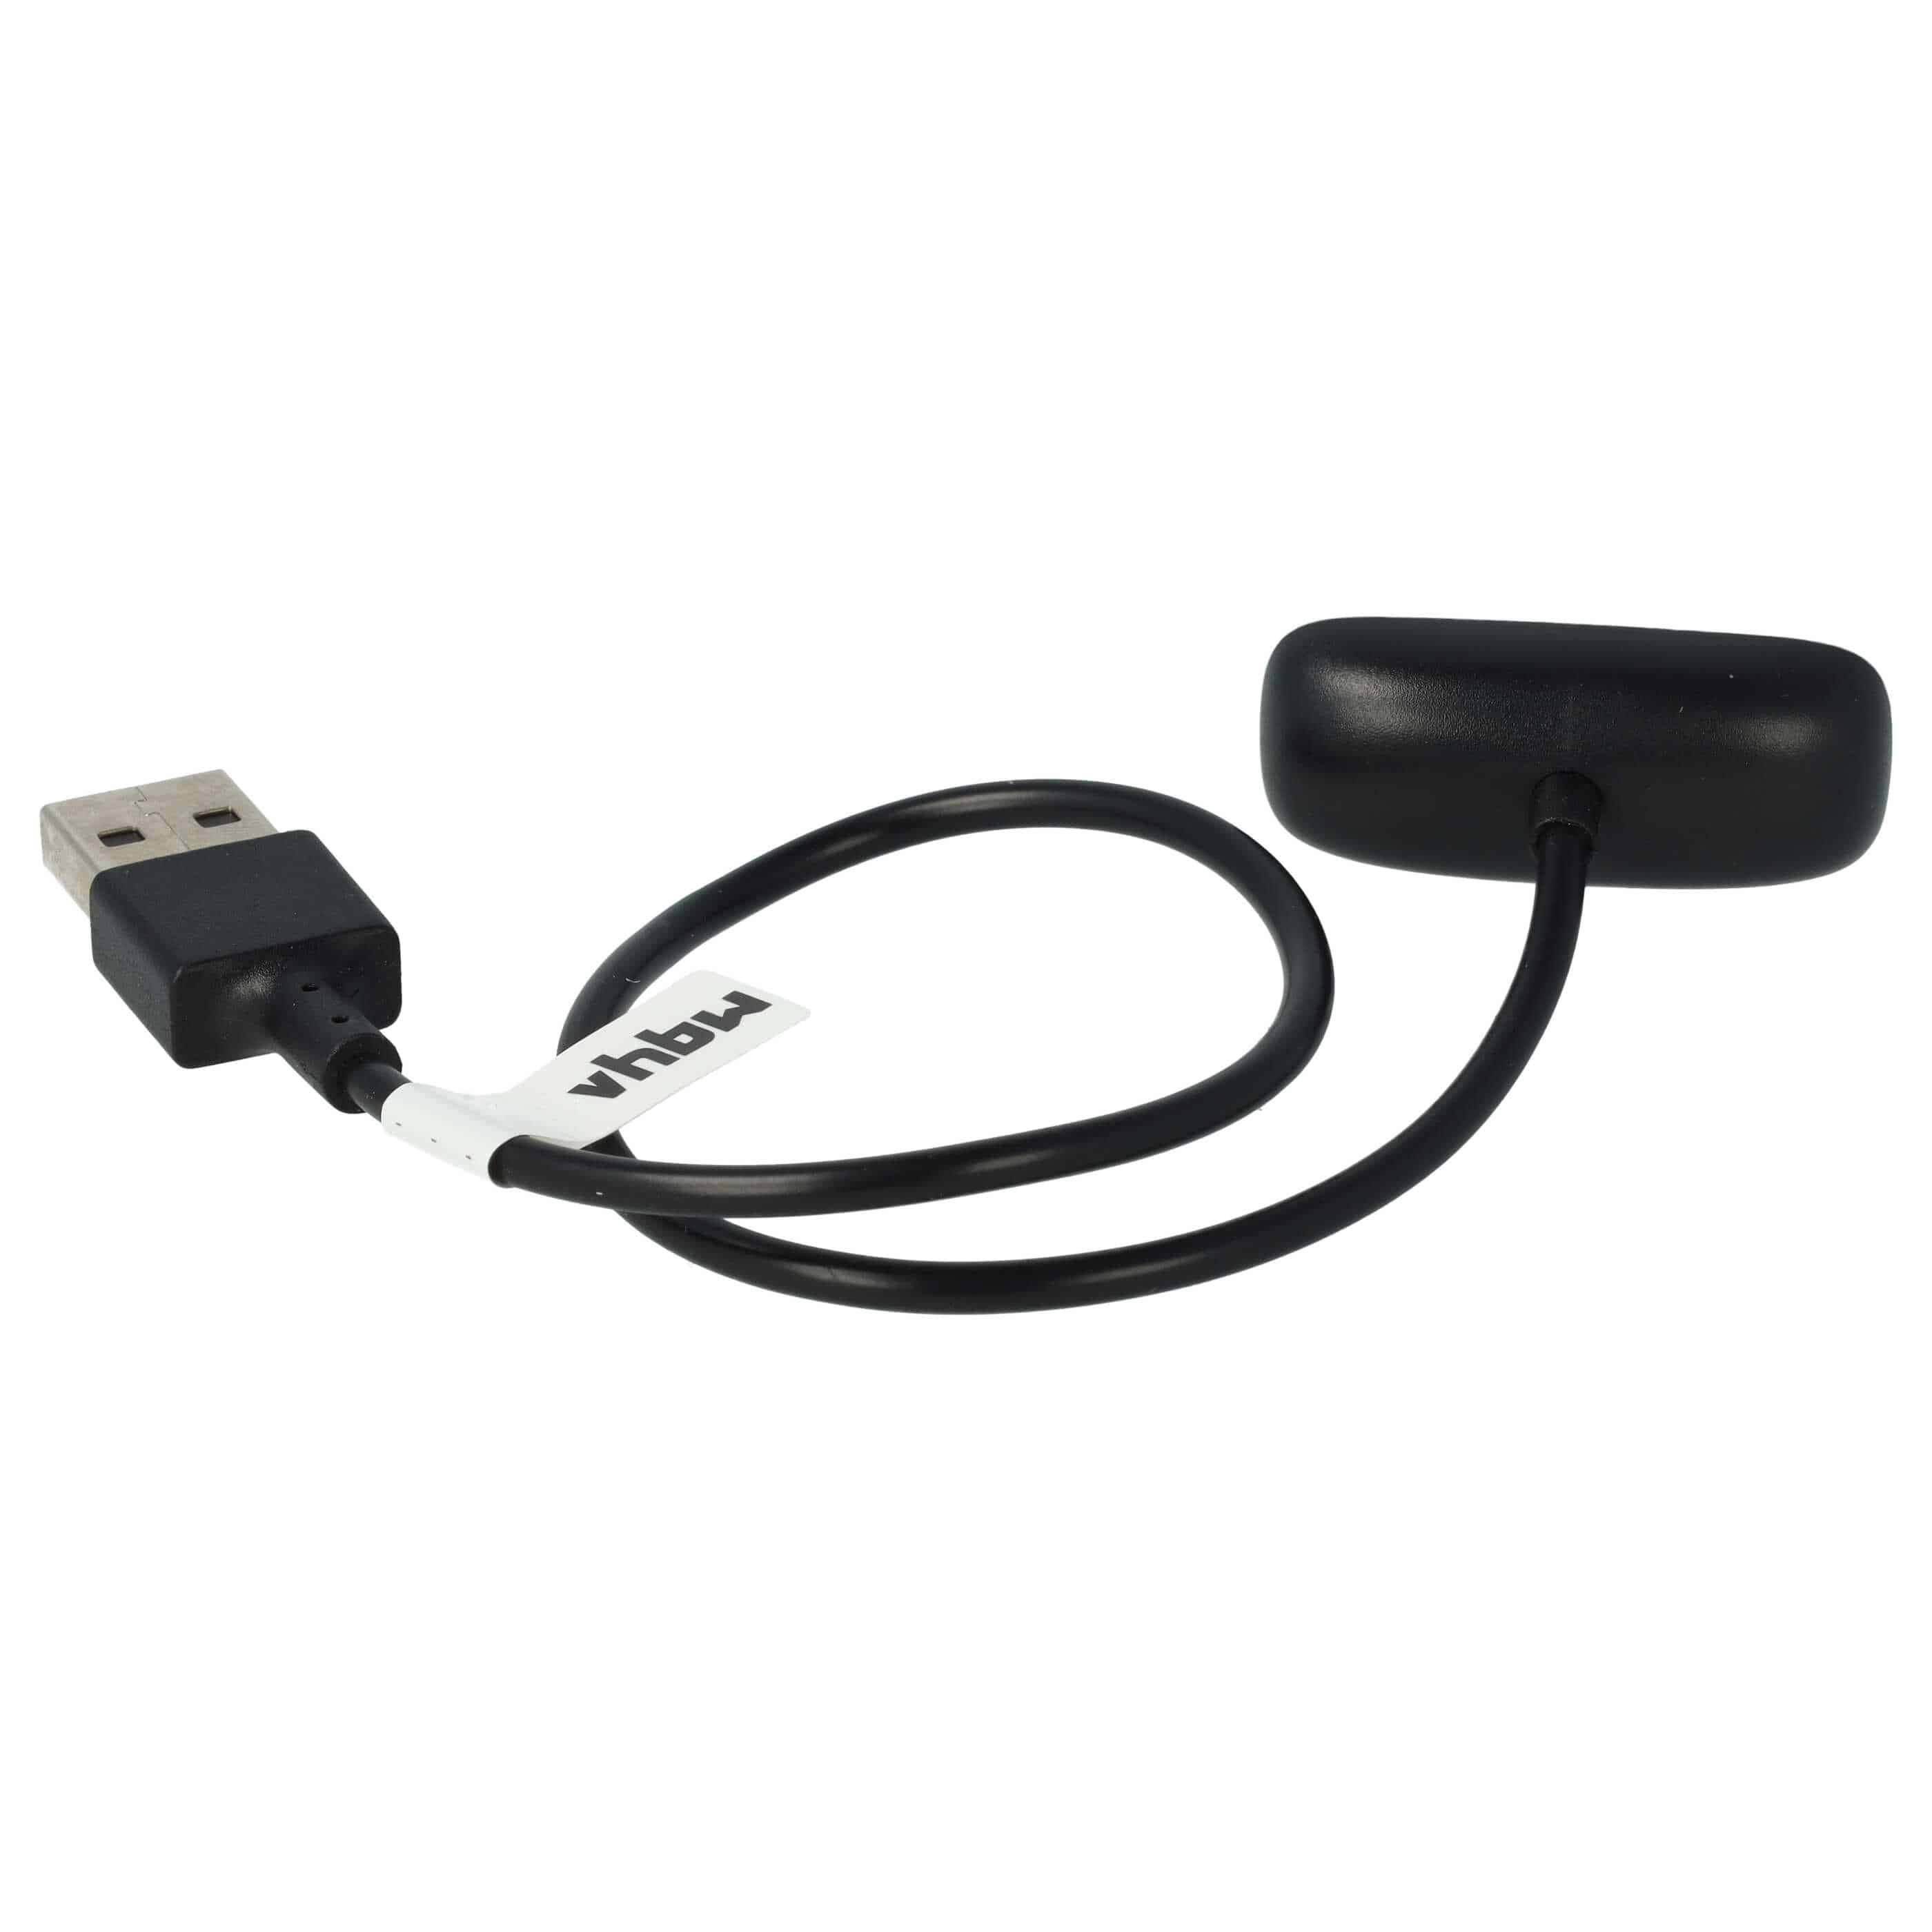 Cable de carga USB para smartwatch Fitbit Ace - negro 30 cm